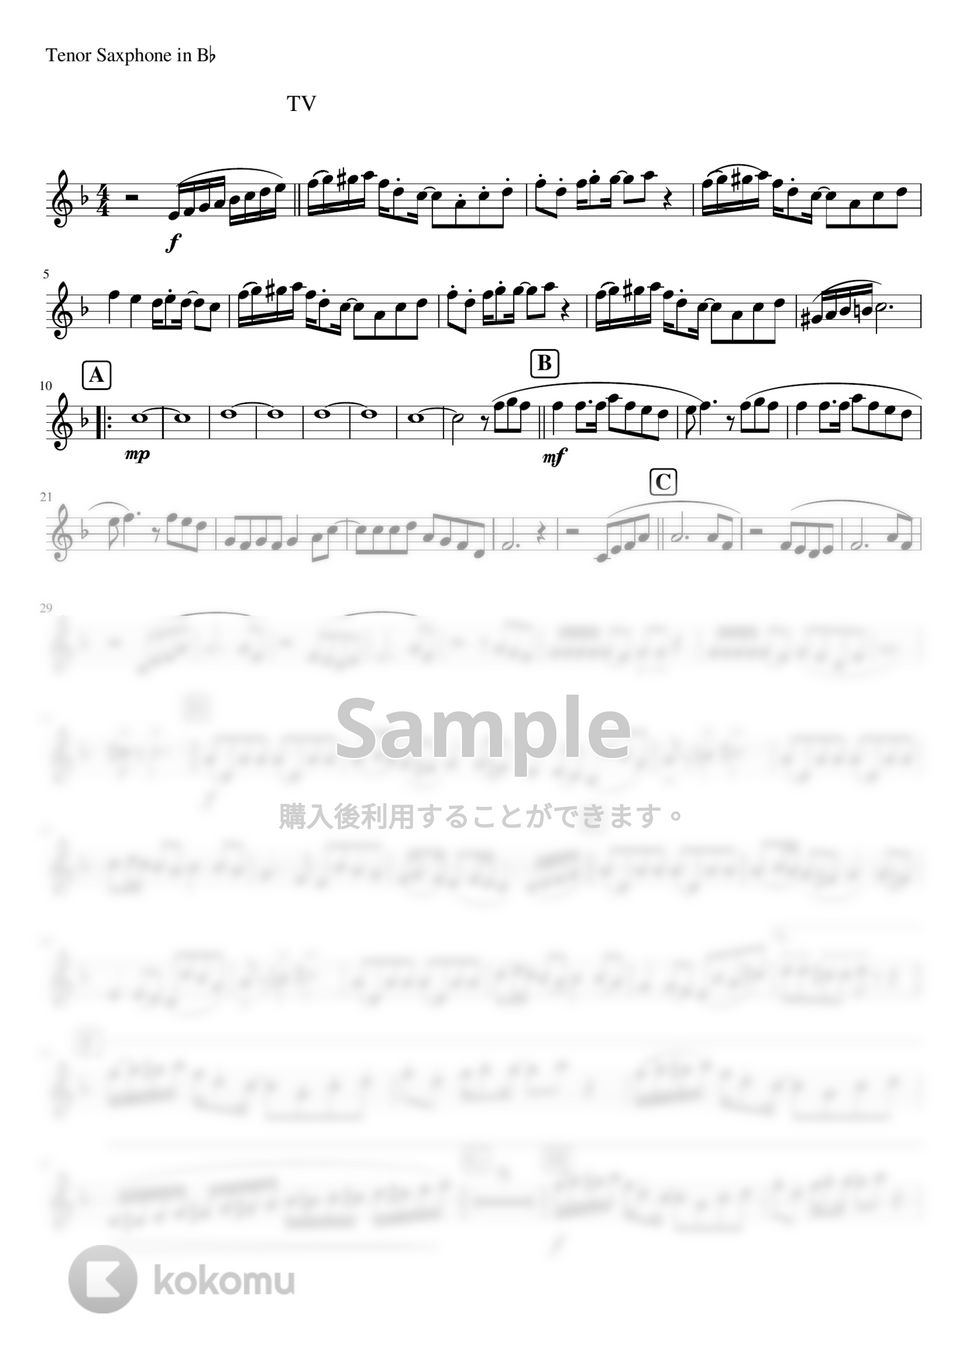 おジャ魔女どれみ - おジャ魔女カーニバル!! (吹奏楽少人数パート譜テナーサックス) by orinpia music